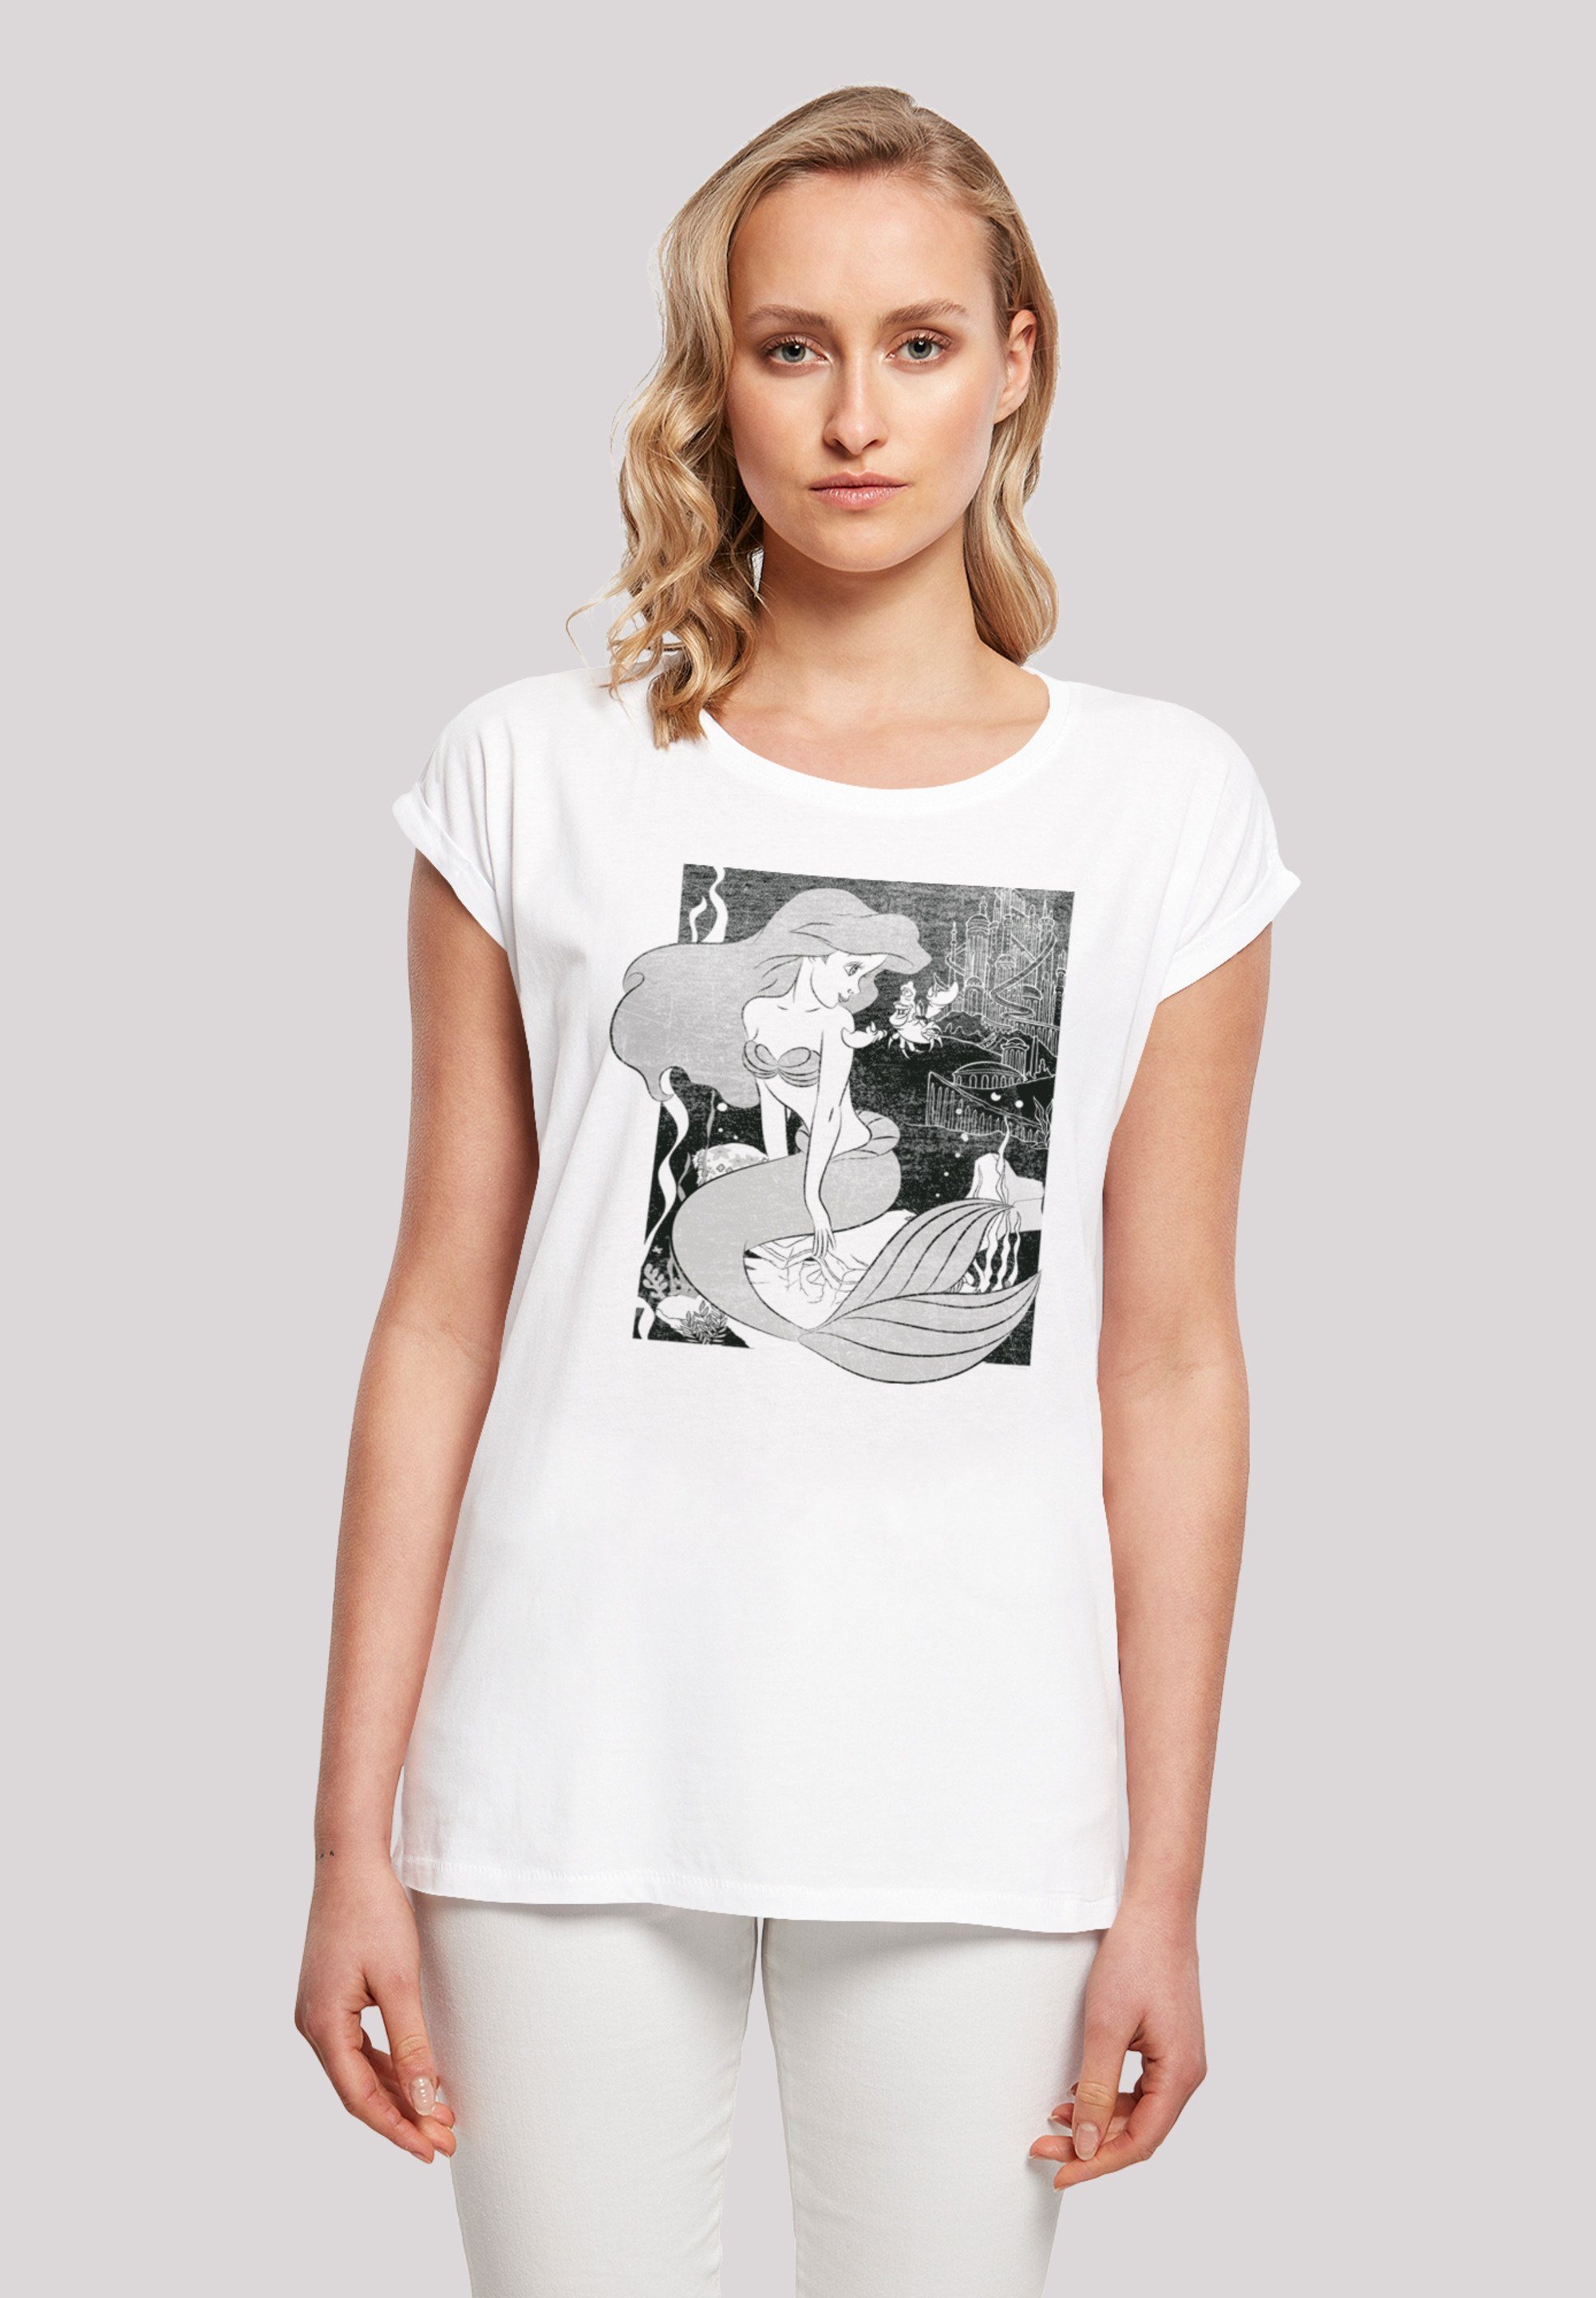 mit Baumwollstoff hohem Arielle Print, weicher Disney Tragekomfort Sehr die Meerjungfrau T-Shirt F4NT4STIC